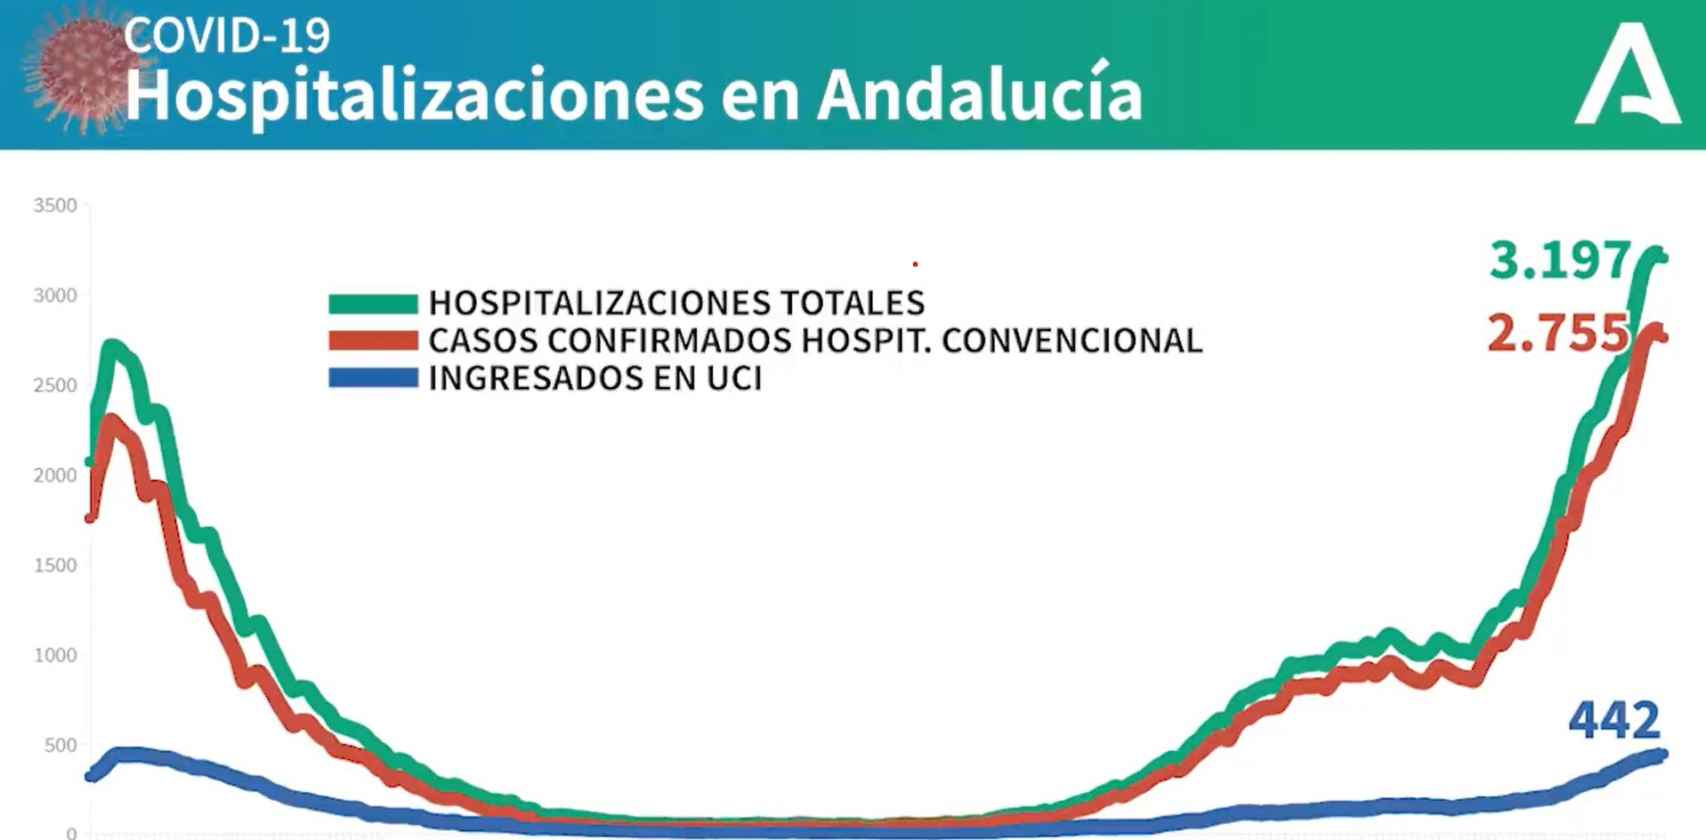 Hospitalizaciones en Andalucía: primera ola vs segunda.